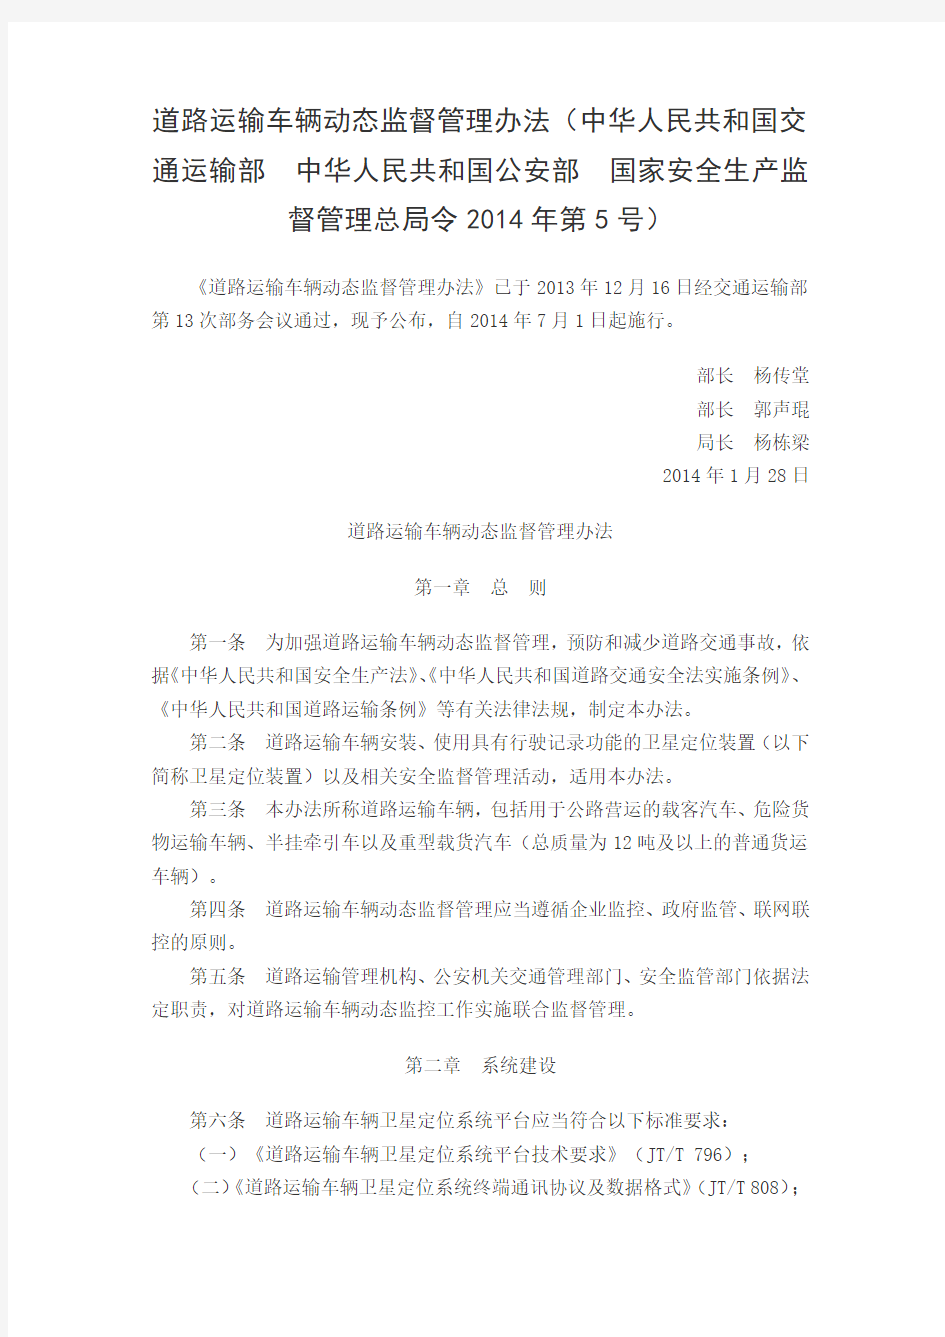 《道路运输车辆动态监督管理办法》(中华人民共和国交通运输部令2014年第5号)